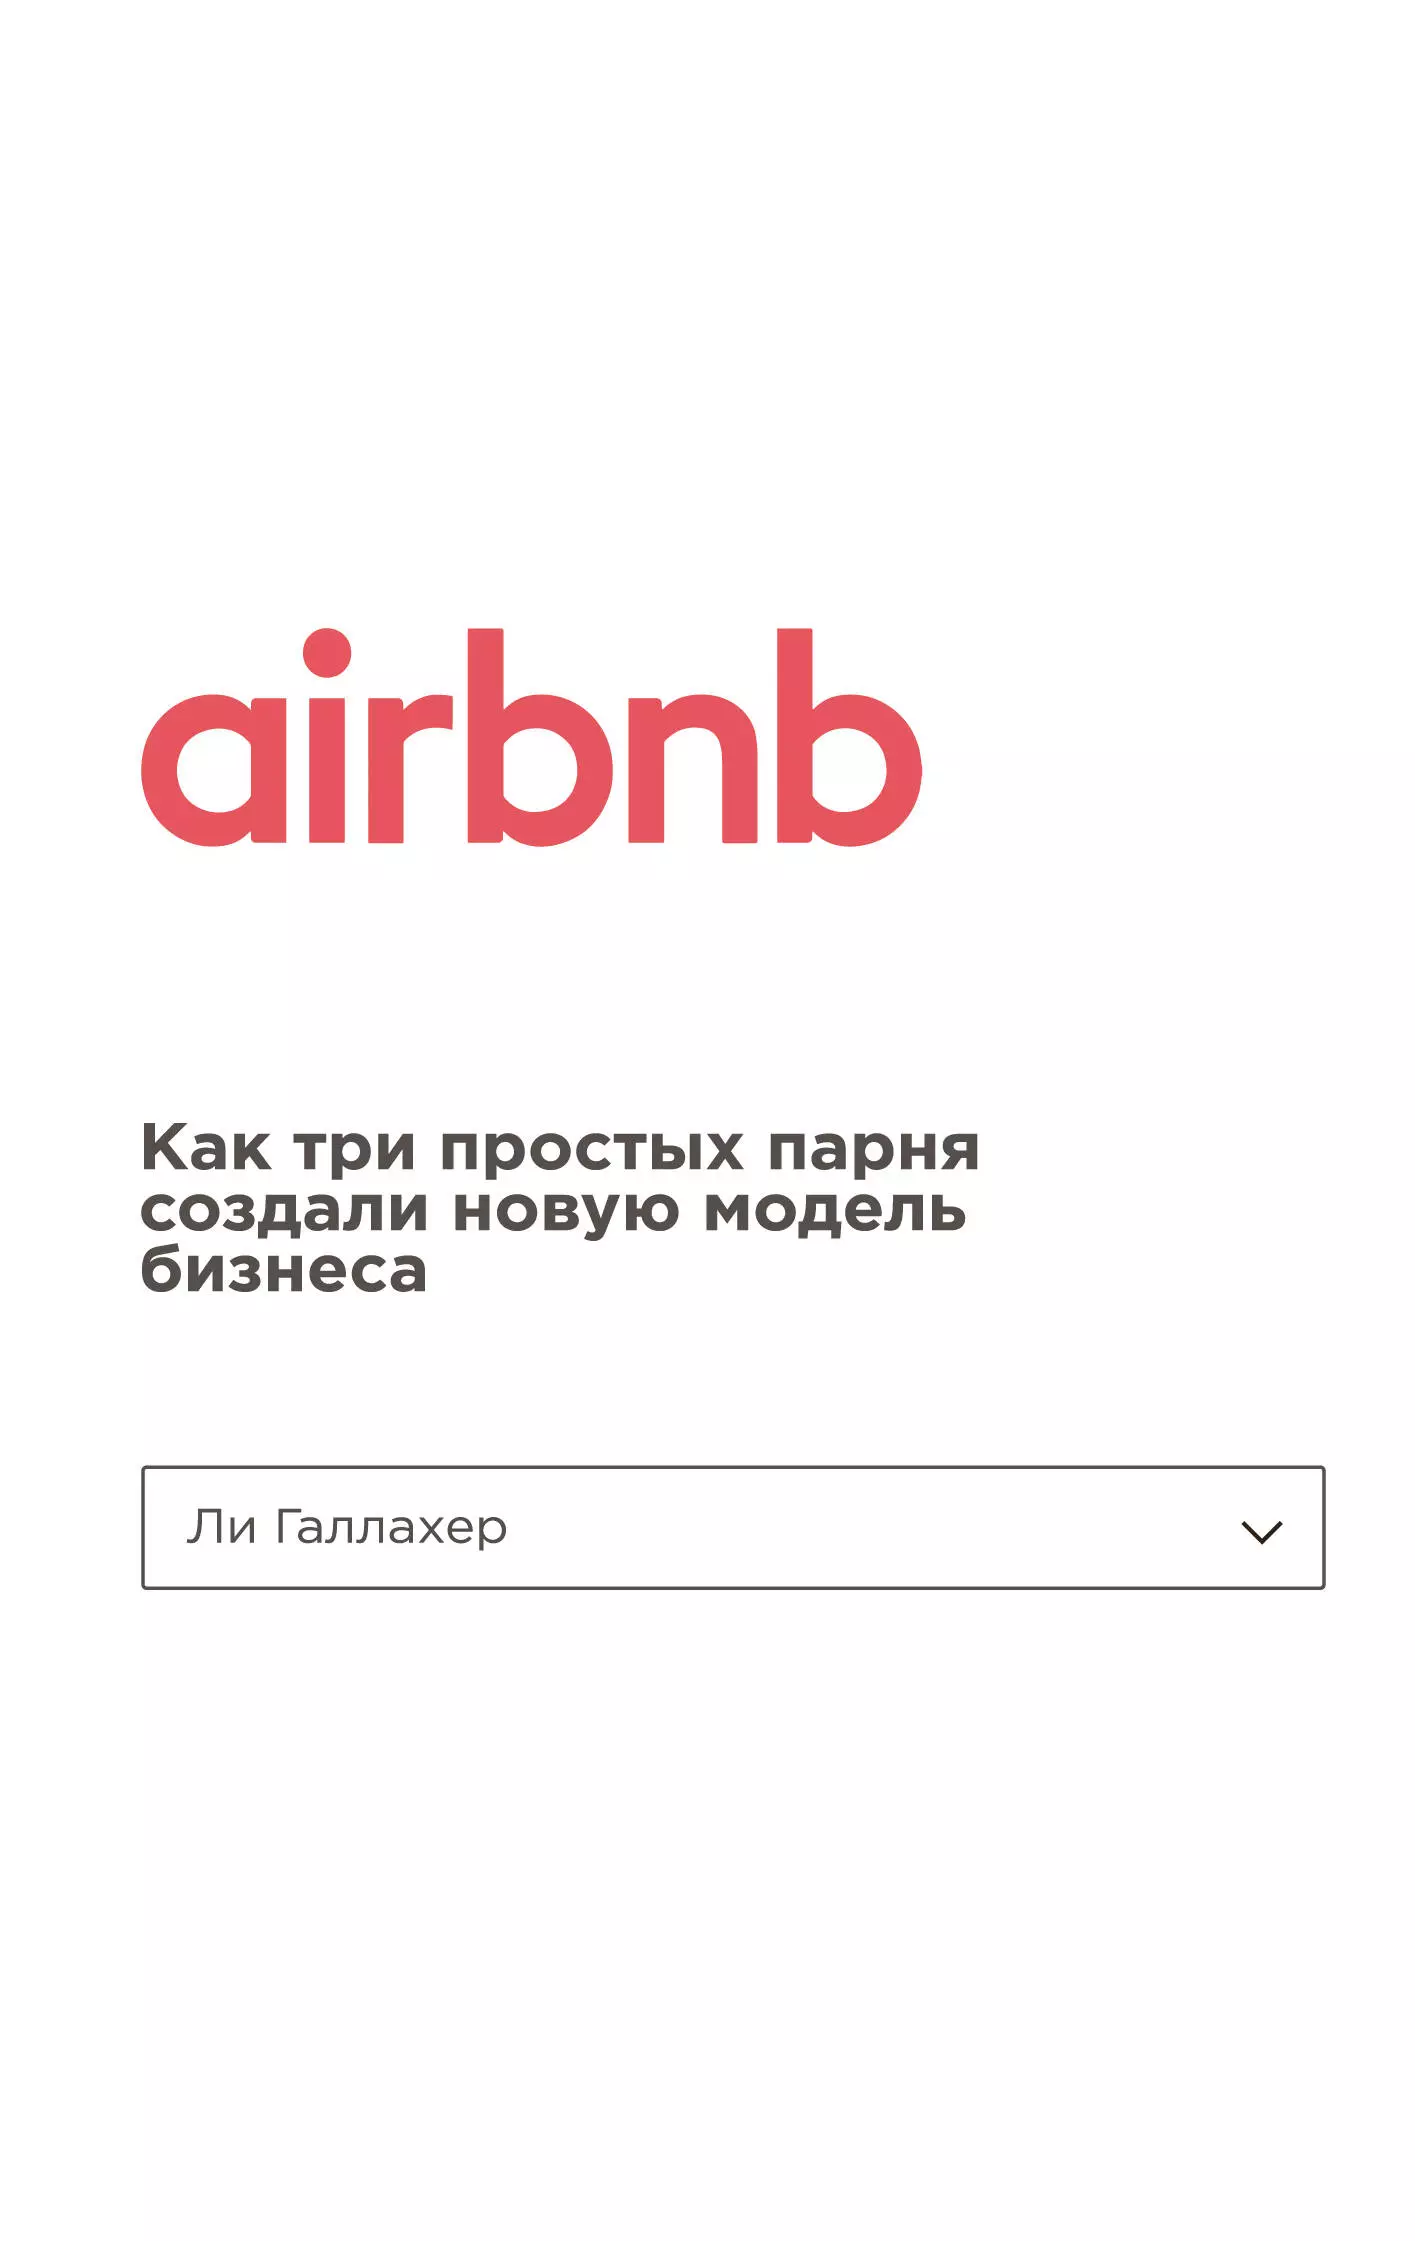 Деревянко Е., Галлахер Ли - Airbnb. Как три простых парня создали новую модель бизнеса